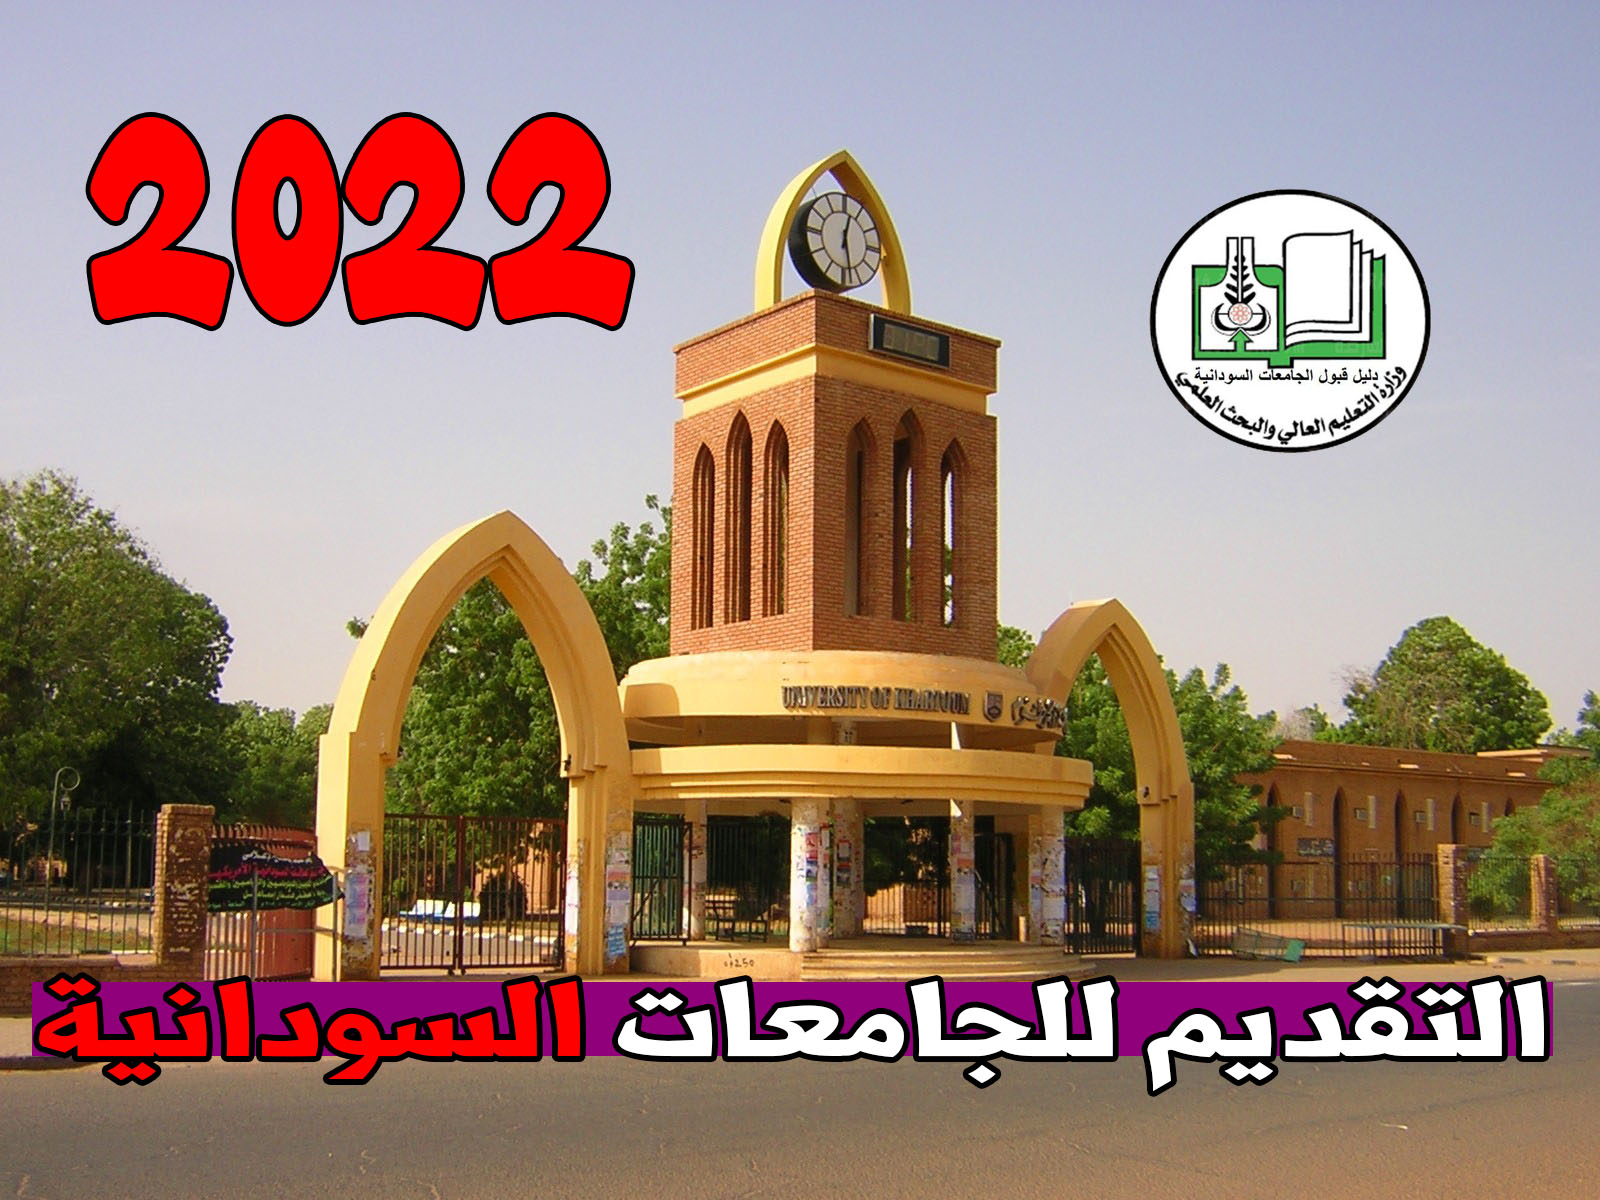 رابط استمارة التقديم للجامعات السودانية 2021-2022 عبر admission.gov.sd وتنزيل دليل القبول بالجامعات